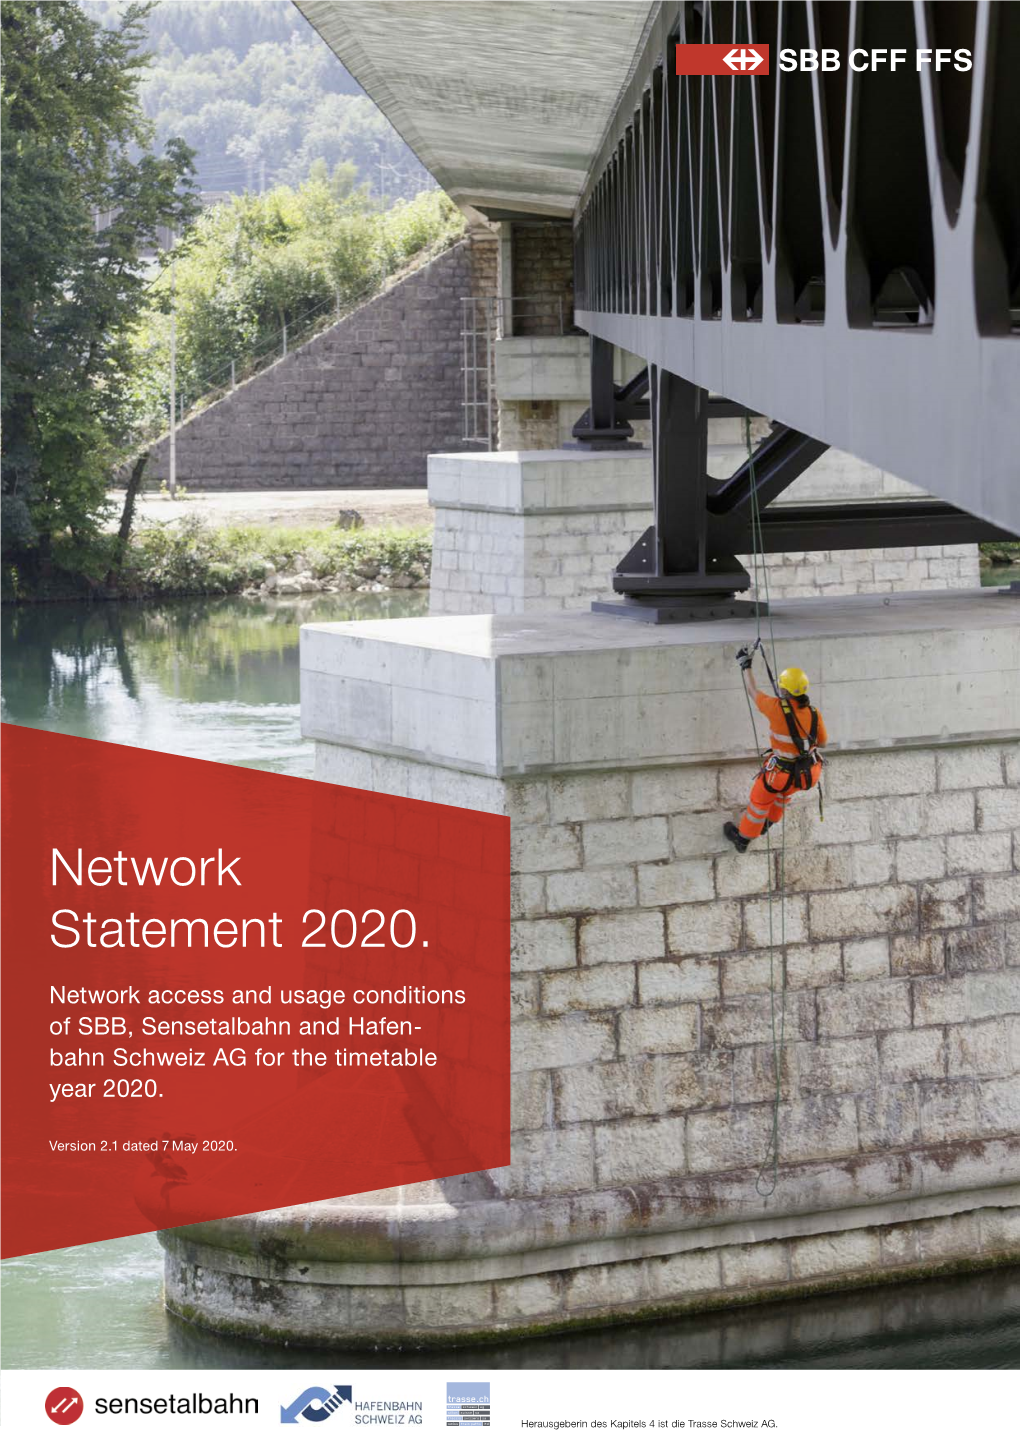 Network Statement 2020. Version Change No